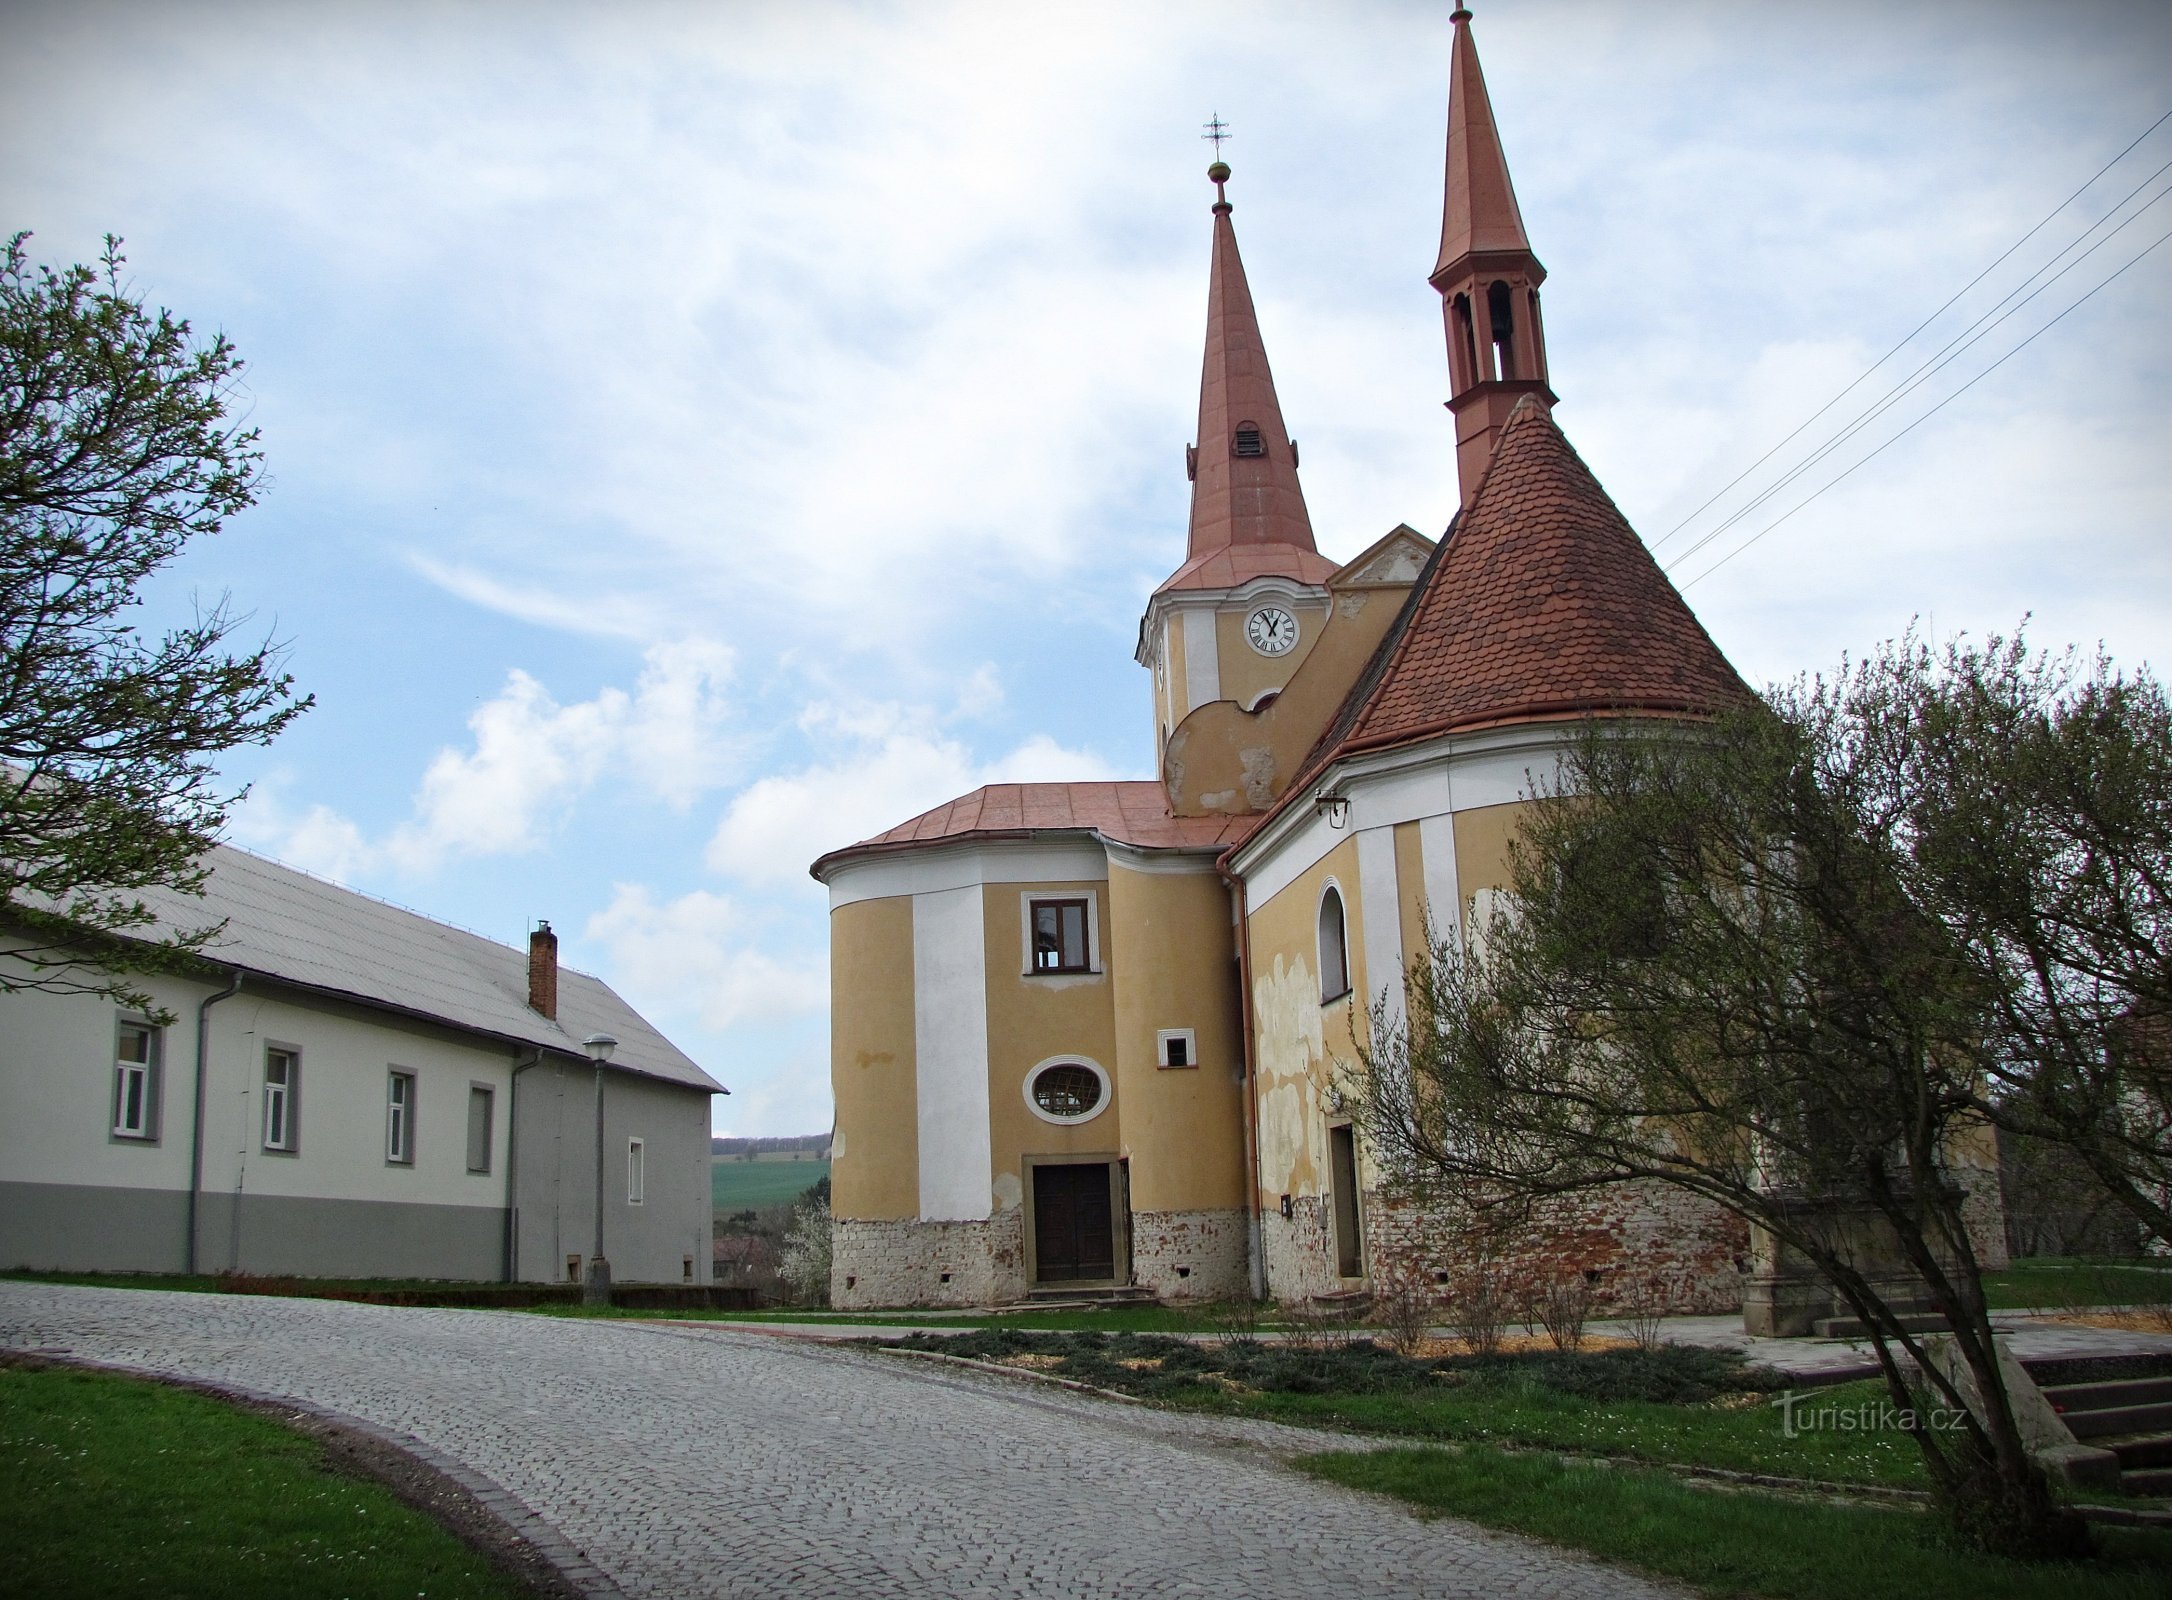 Пачлавице - церковь